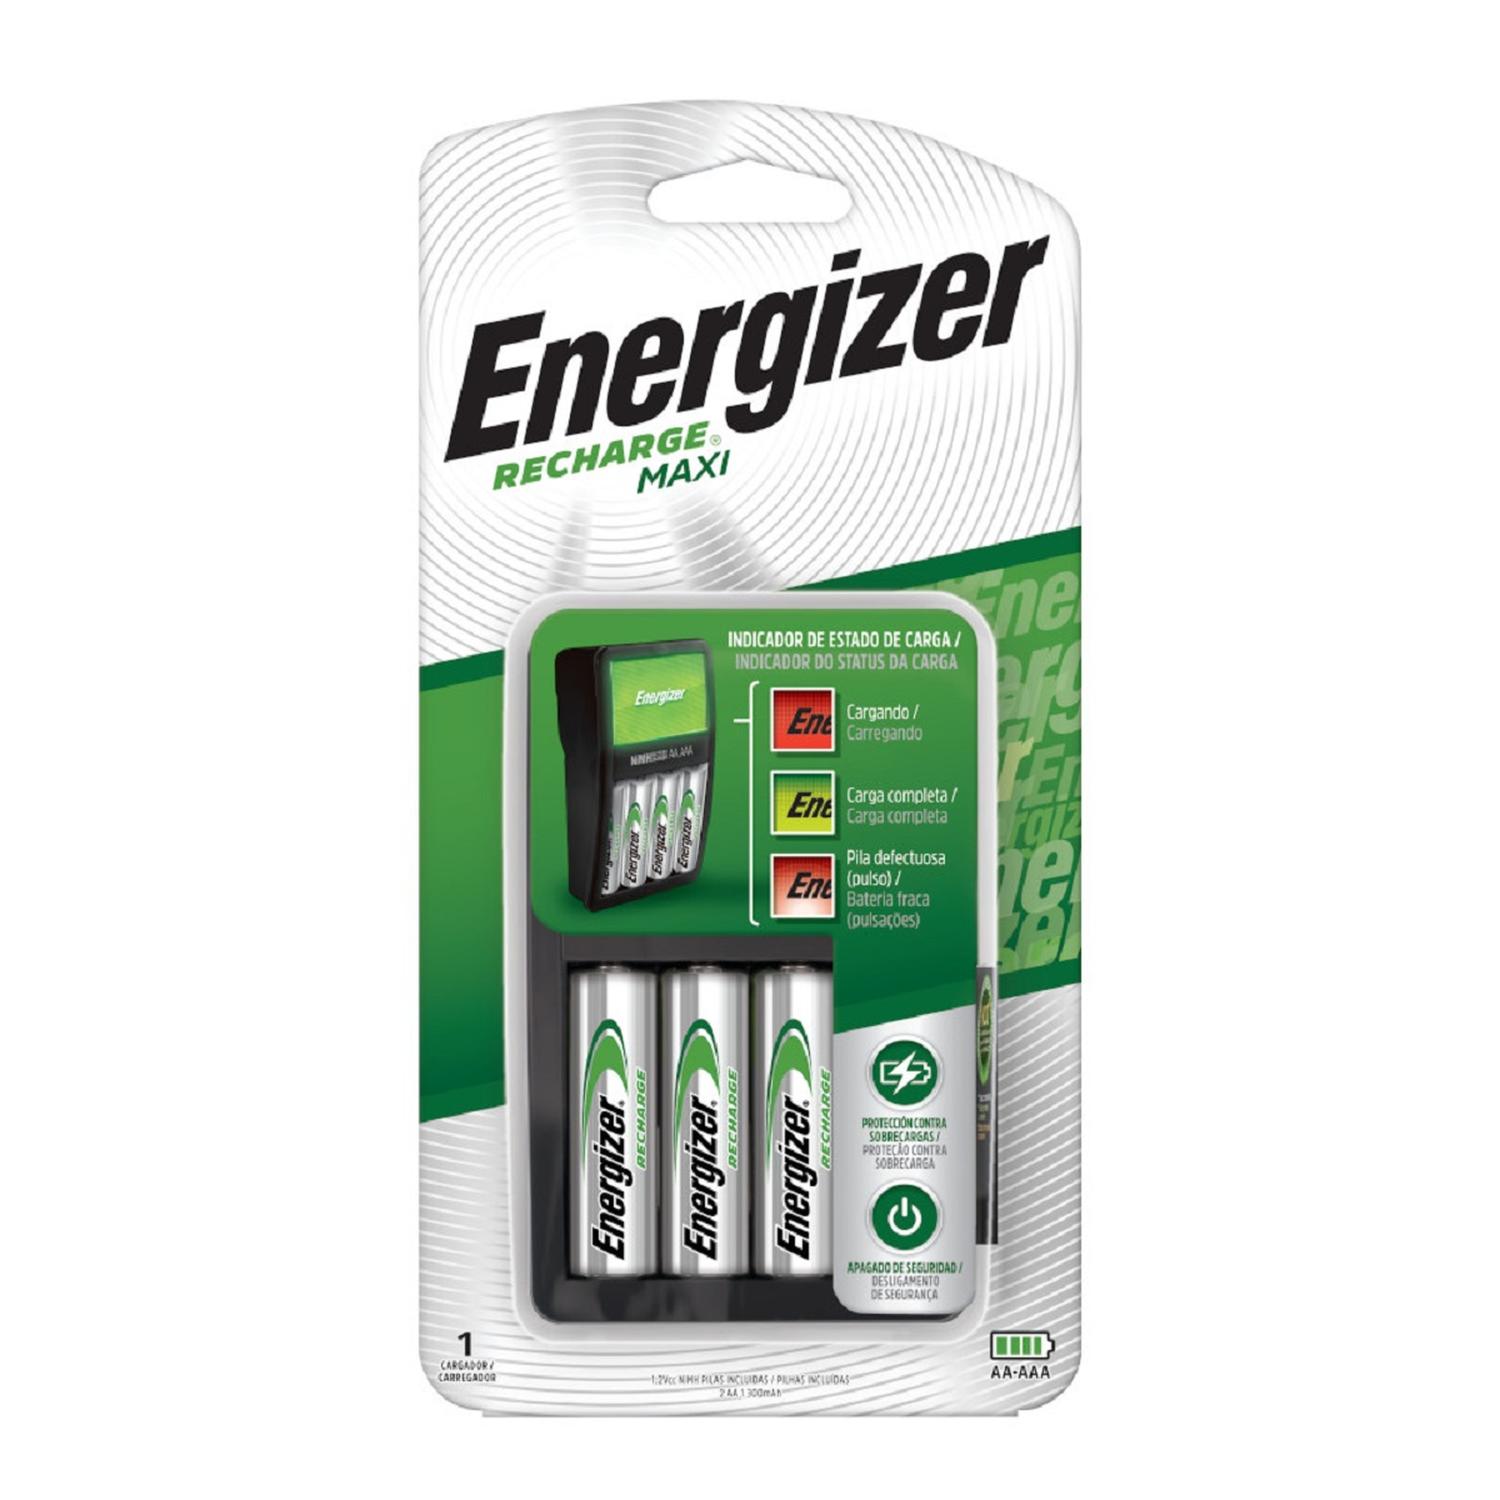 Cargador de Pilas MAXI Energizer + 2AA + 4AAA Energizer